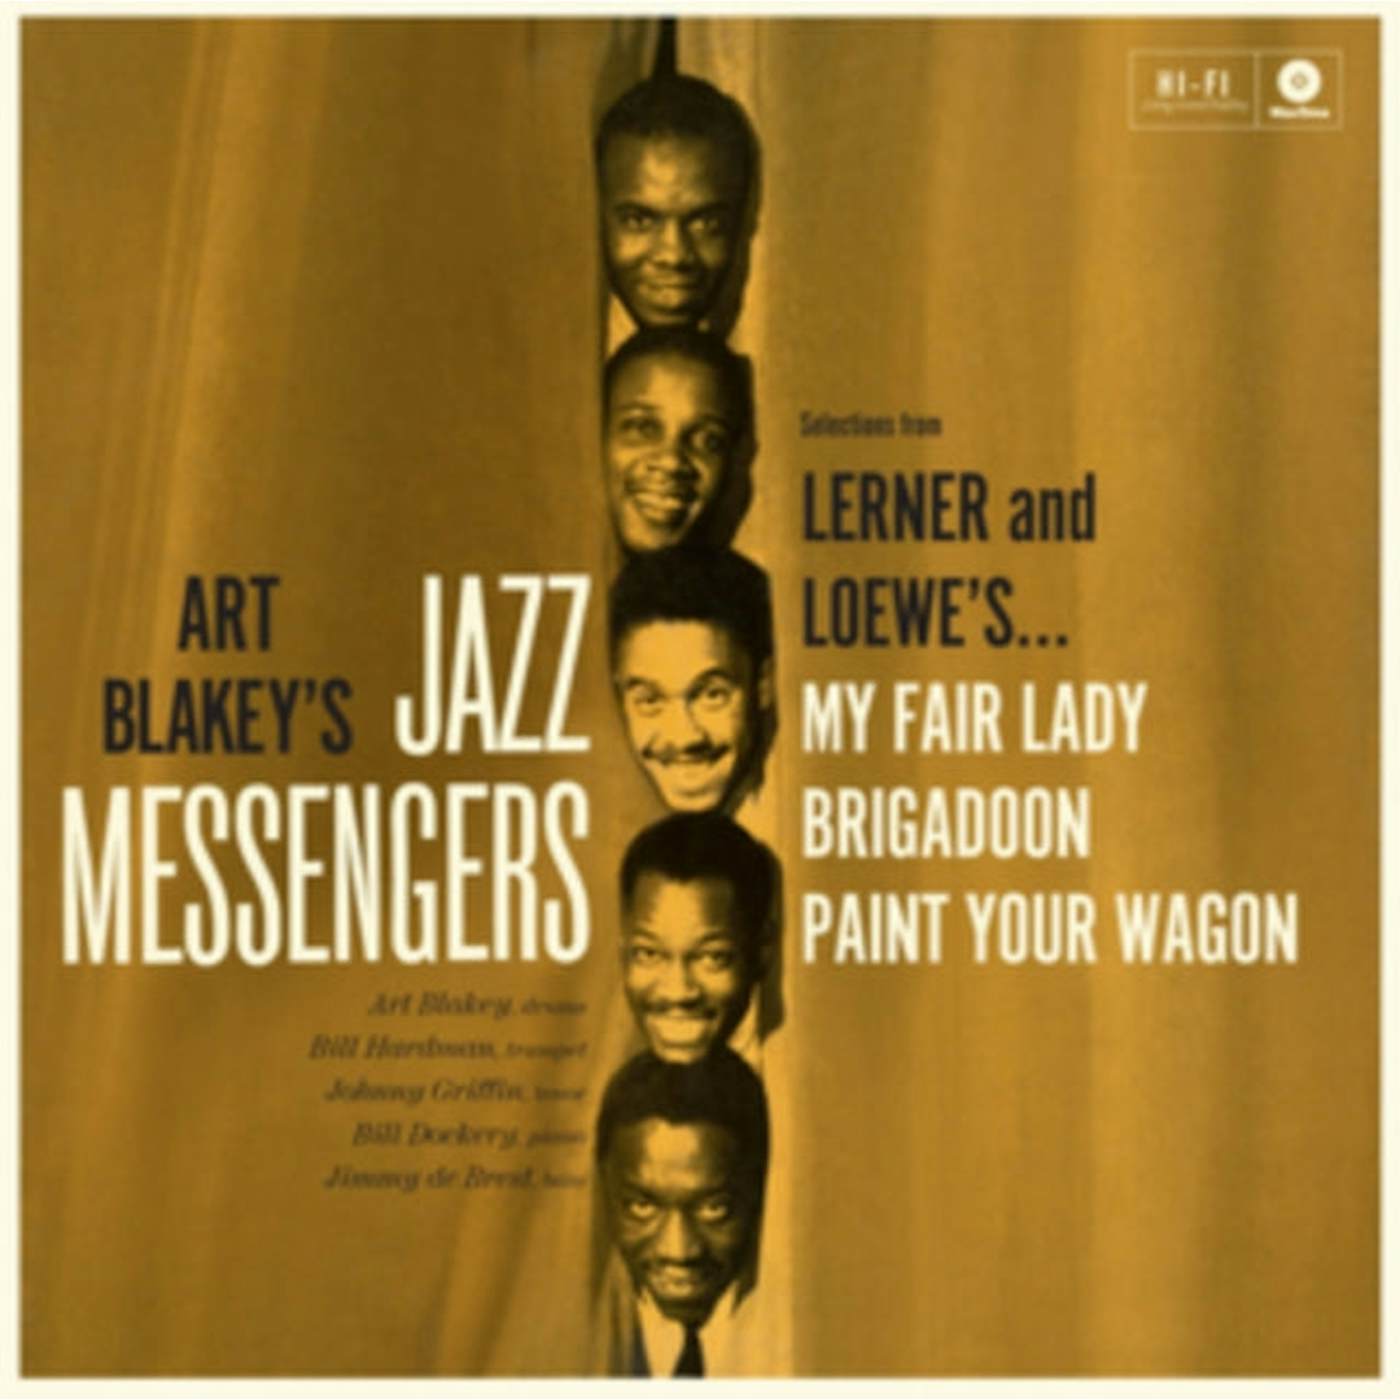 Art Blakey & The Jazz Messengers LP - Play Lerner & Loewe (Vinyl)